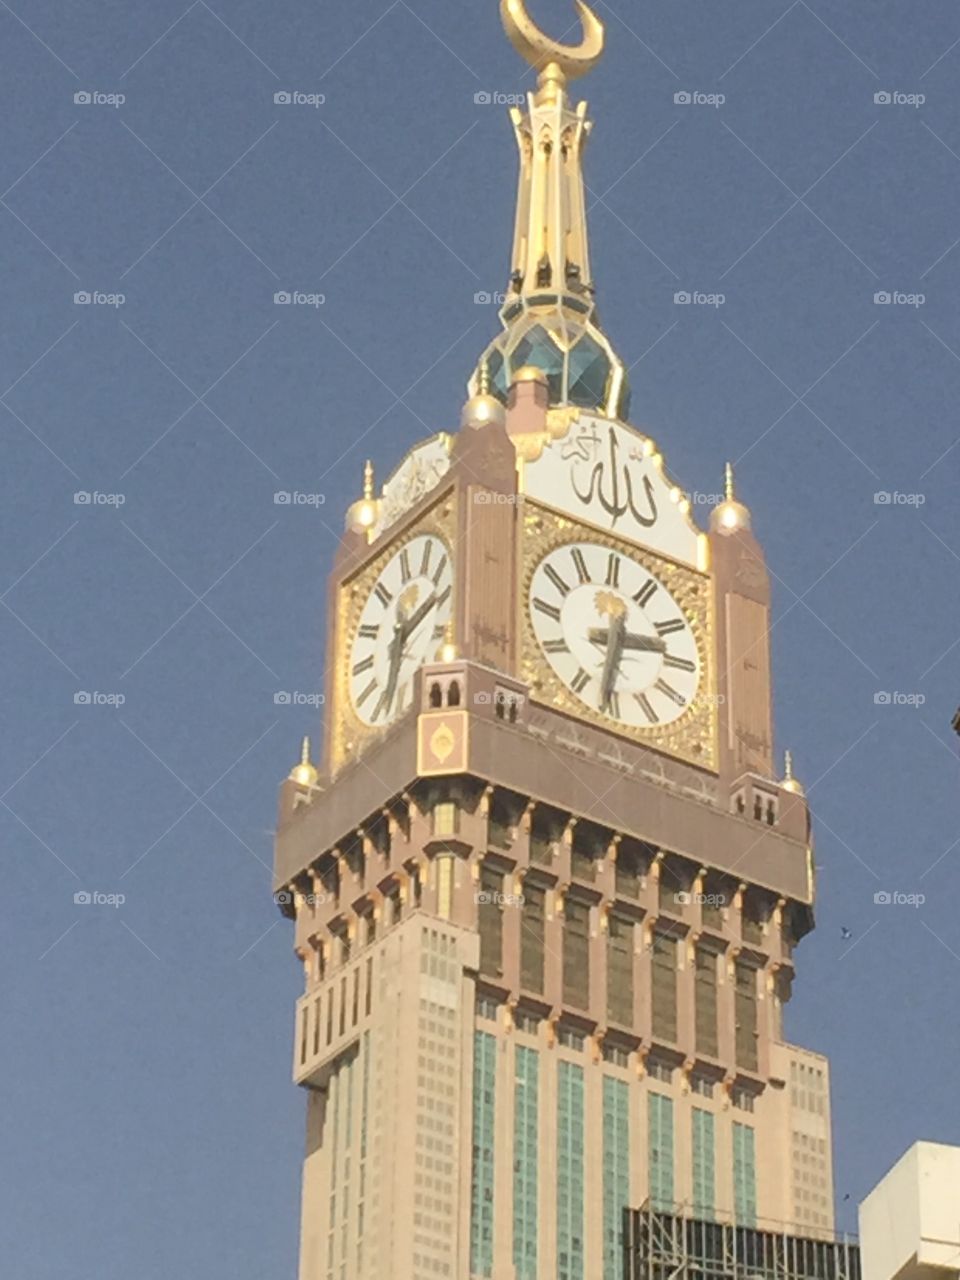 Worlds biggest clock